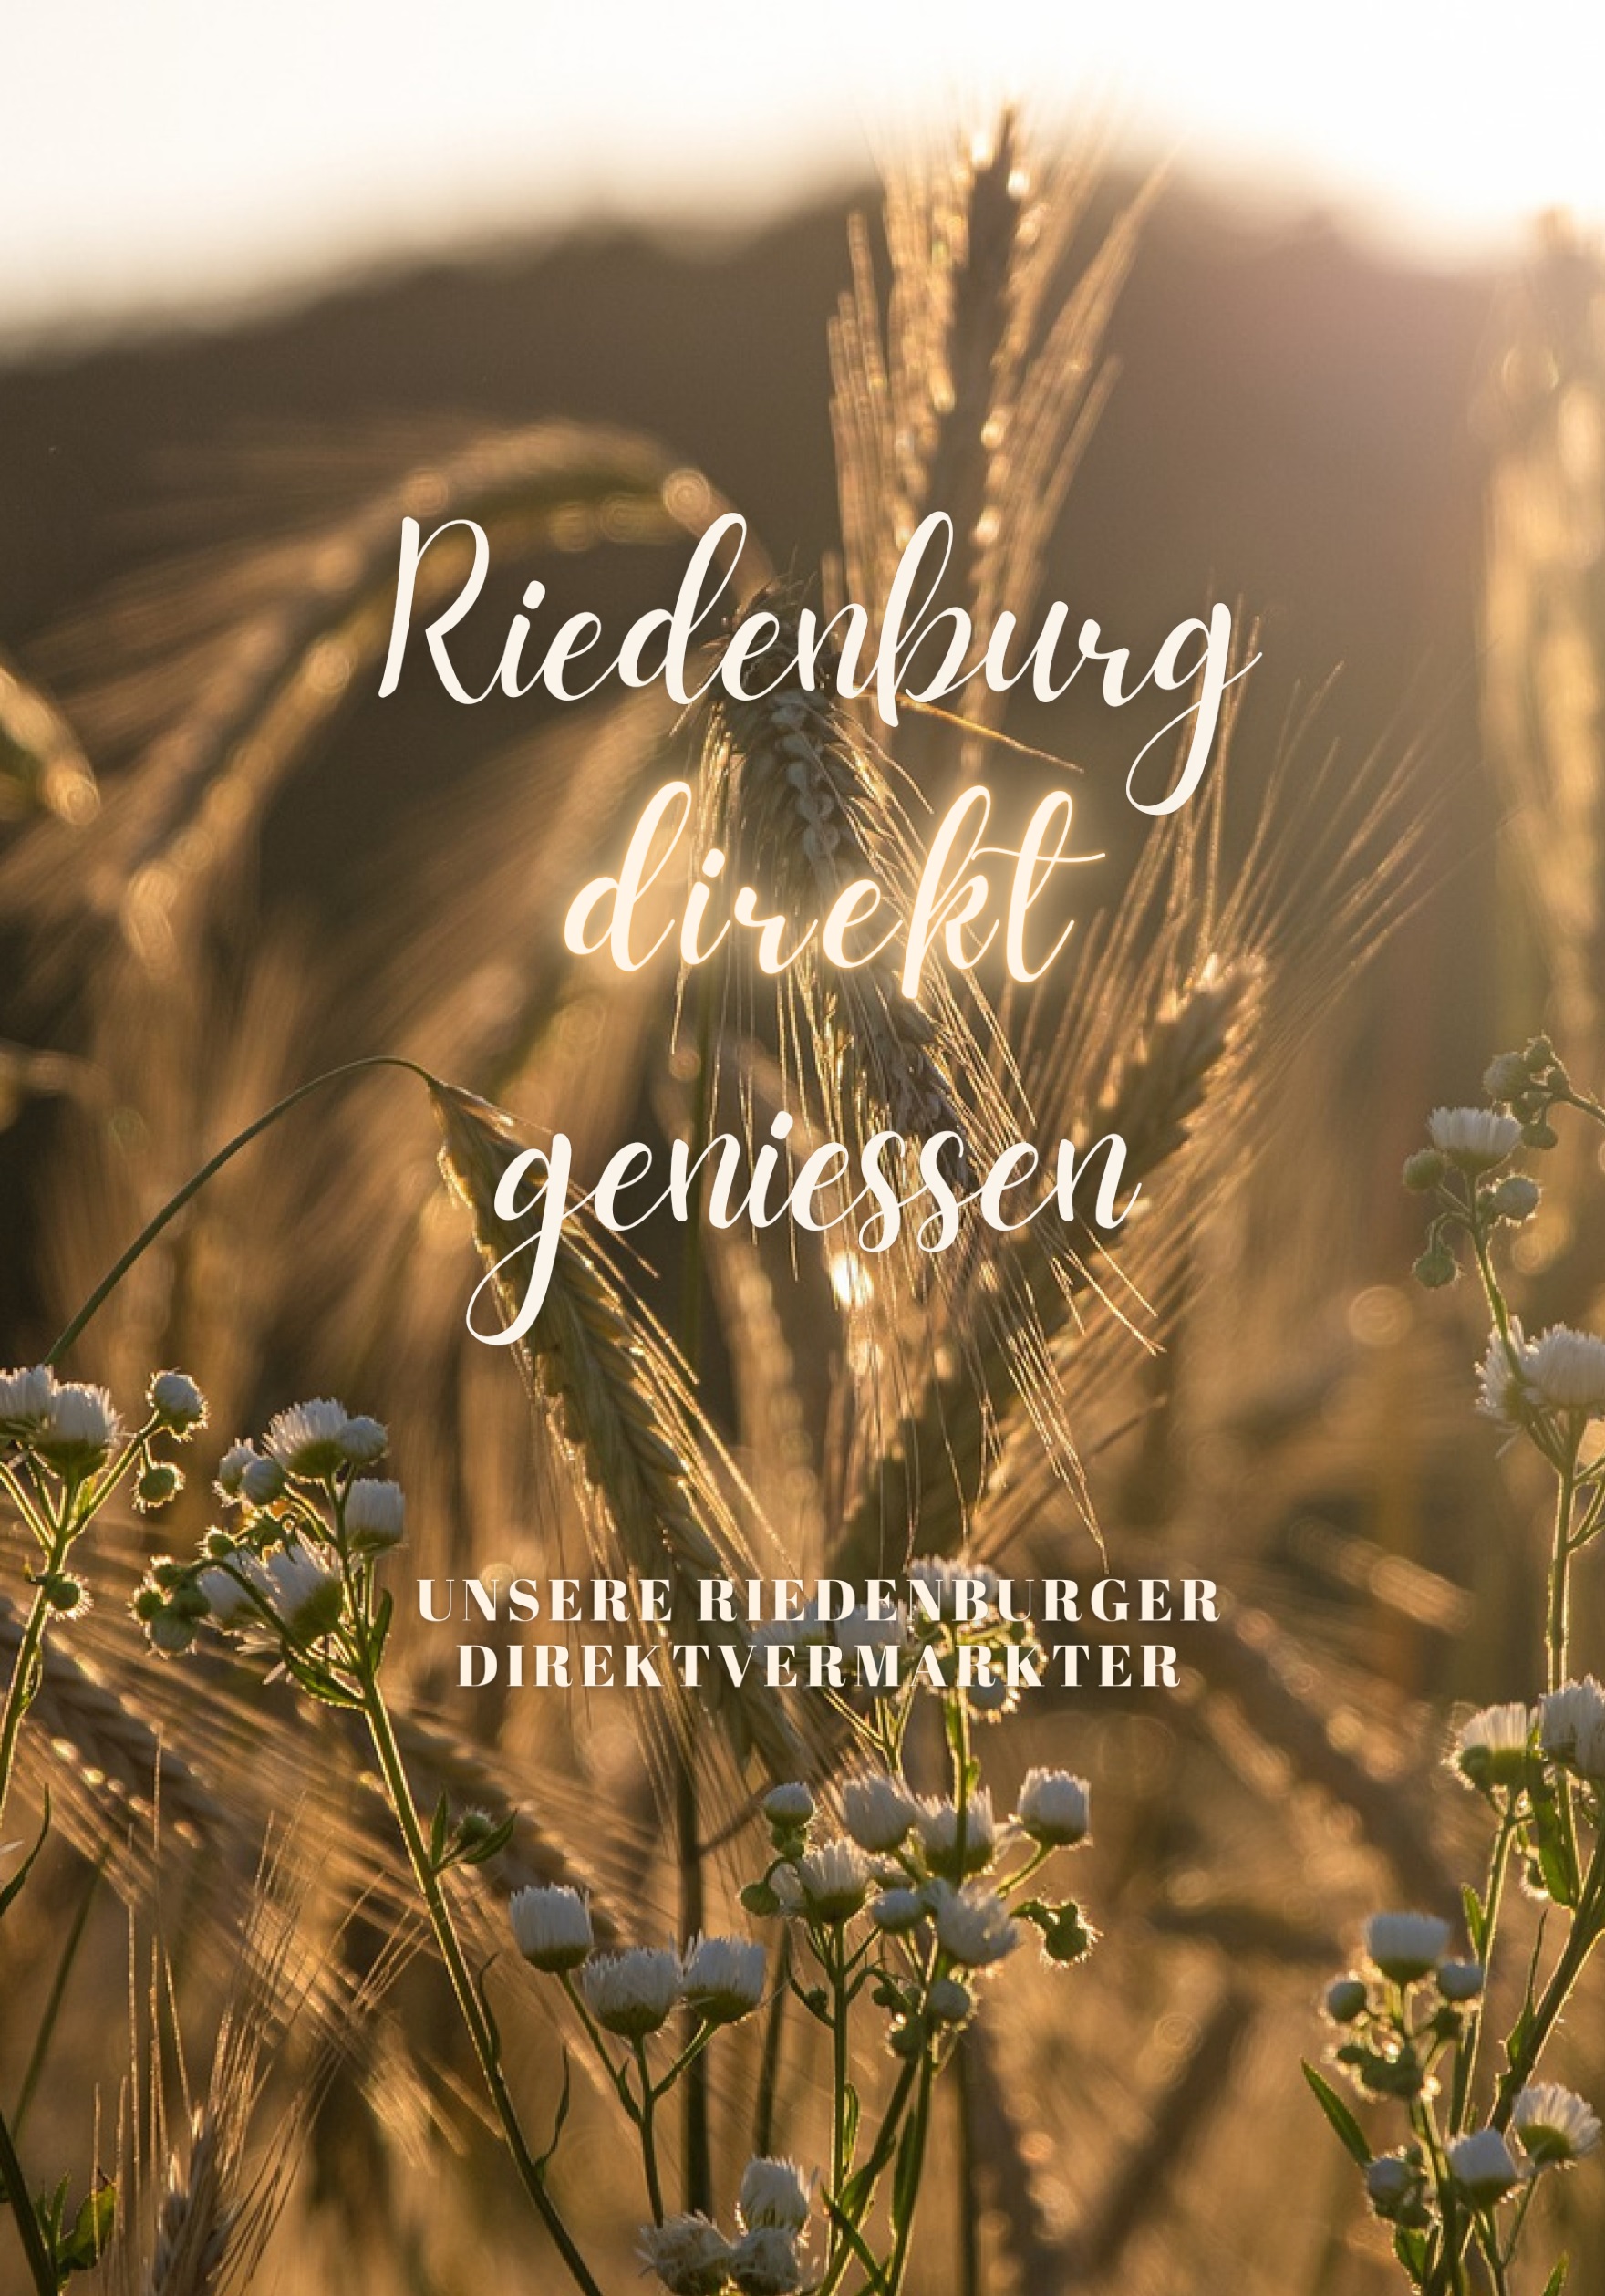 Auf diesem Bild sieht man die Titelseite der Broschüre Riedenburg direkt genießen.